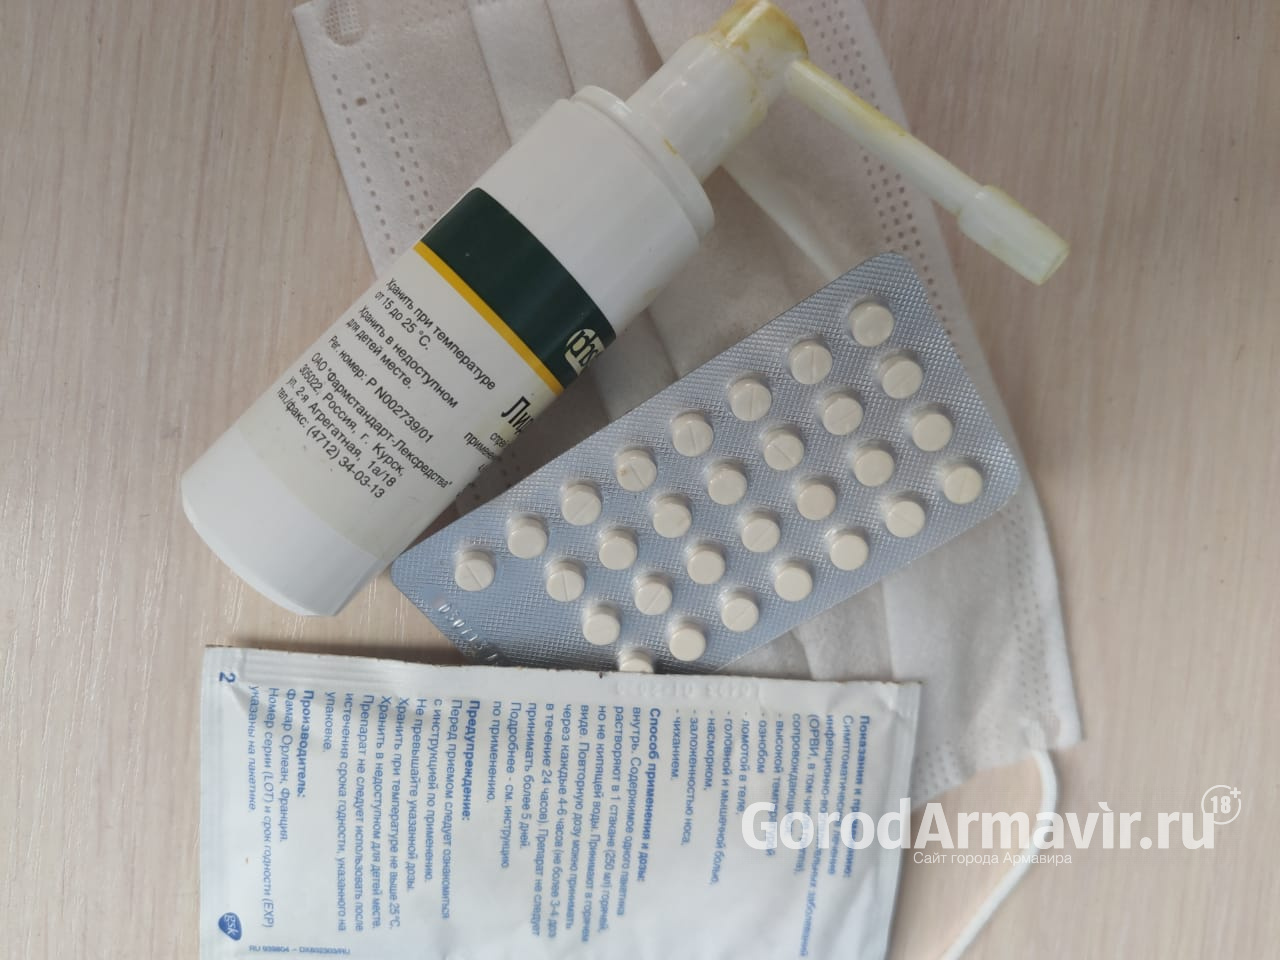 Еще 7 жителей Армавира инфицированы коронавирусом за сутки 